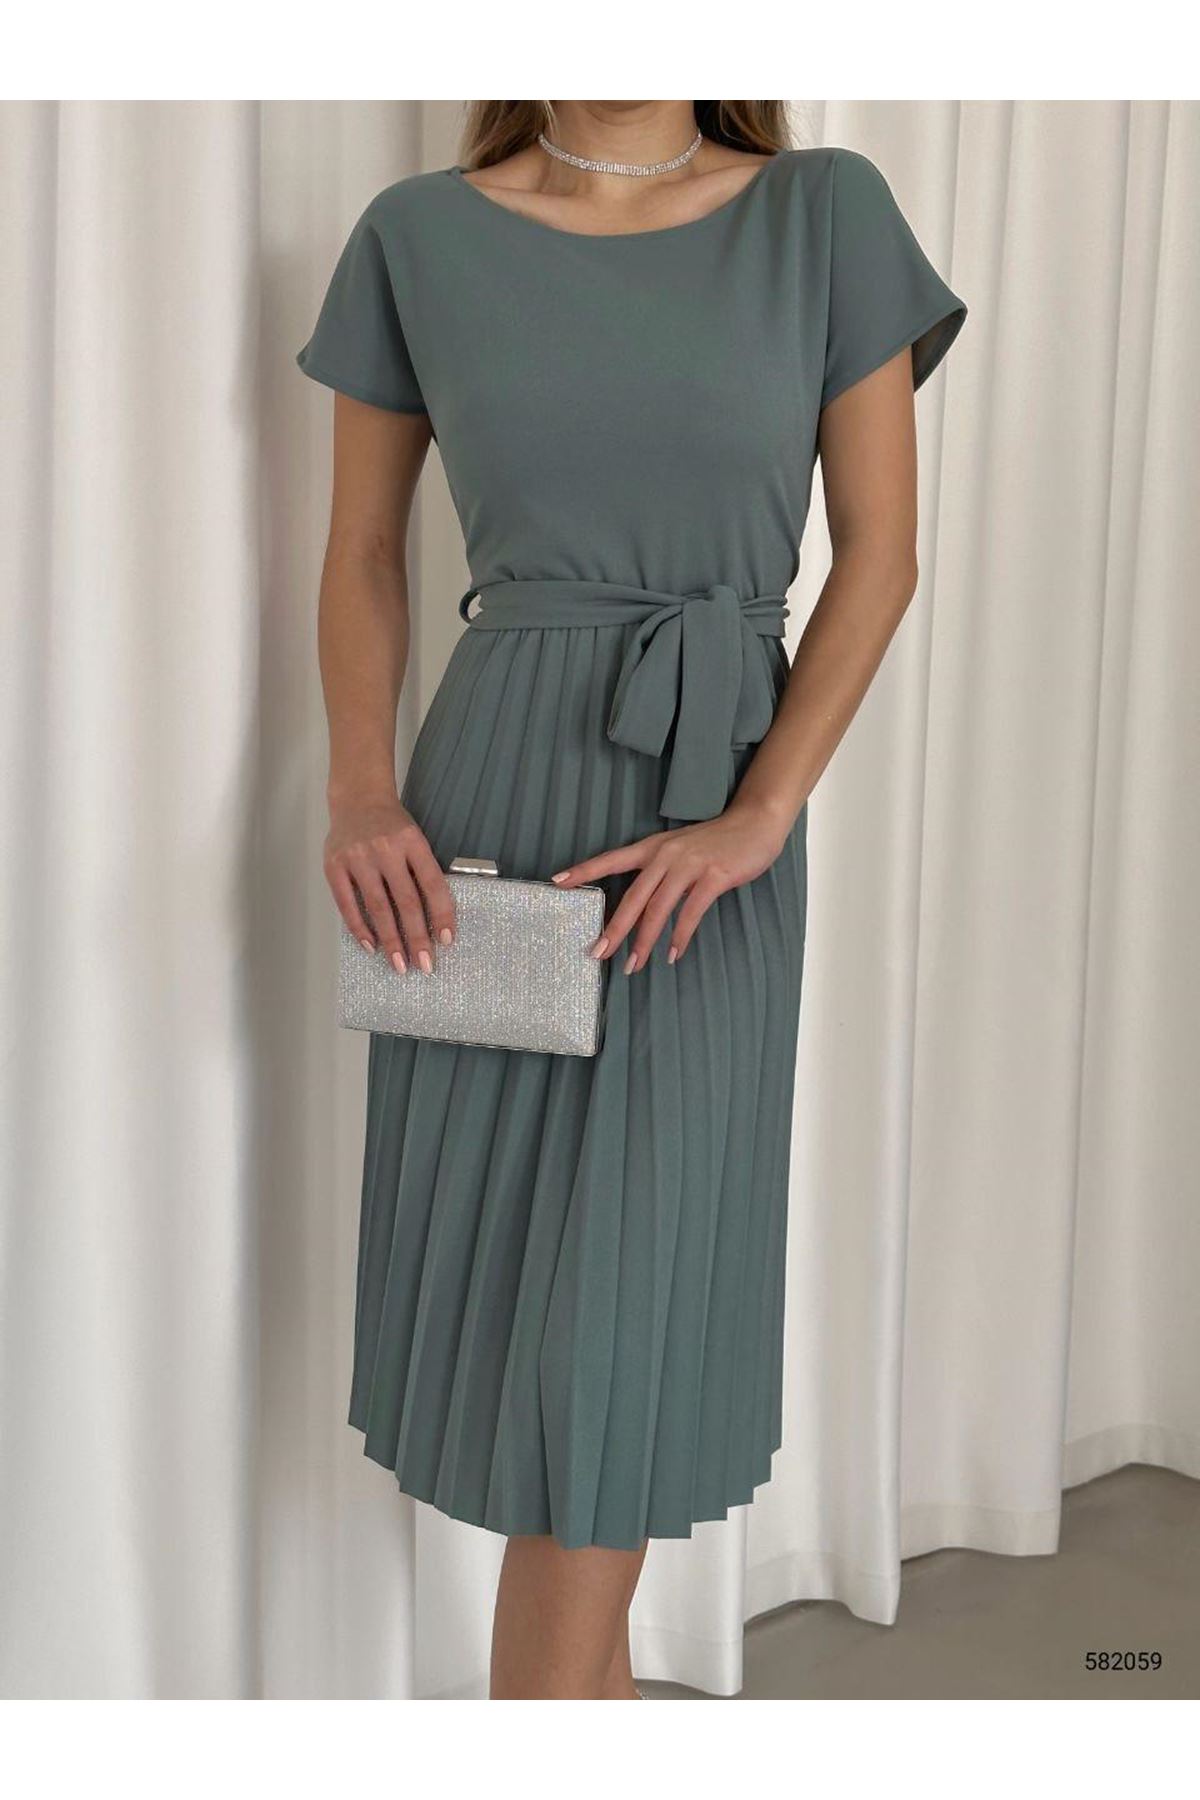 Kadın Mint Krep Kumaş Pliseli Kuşaklı Dizaltı Elbise 2E-2128